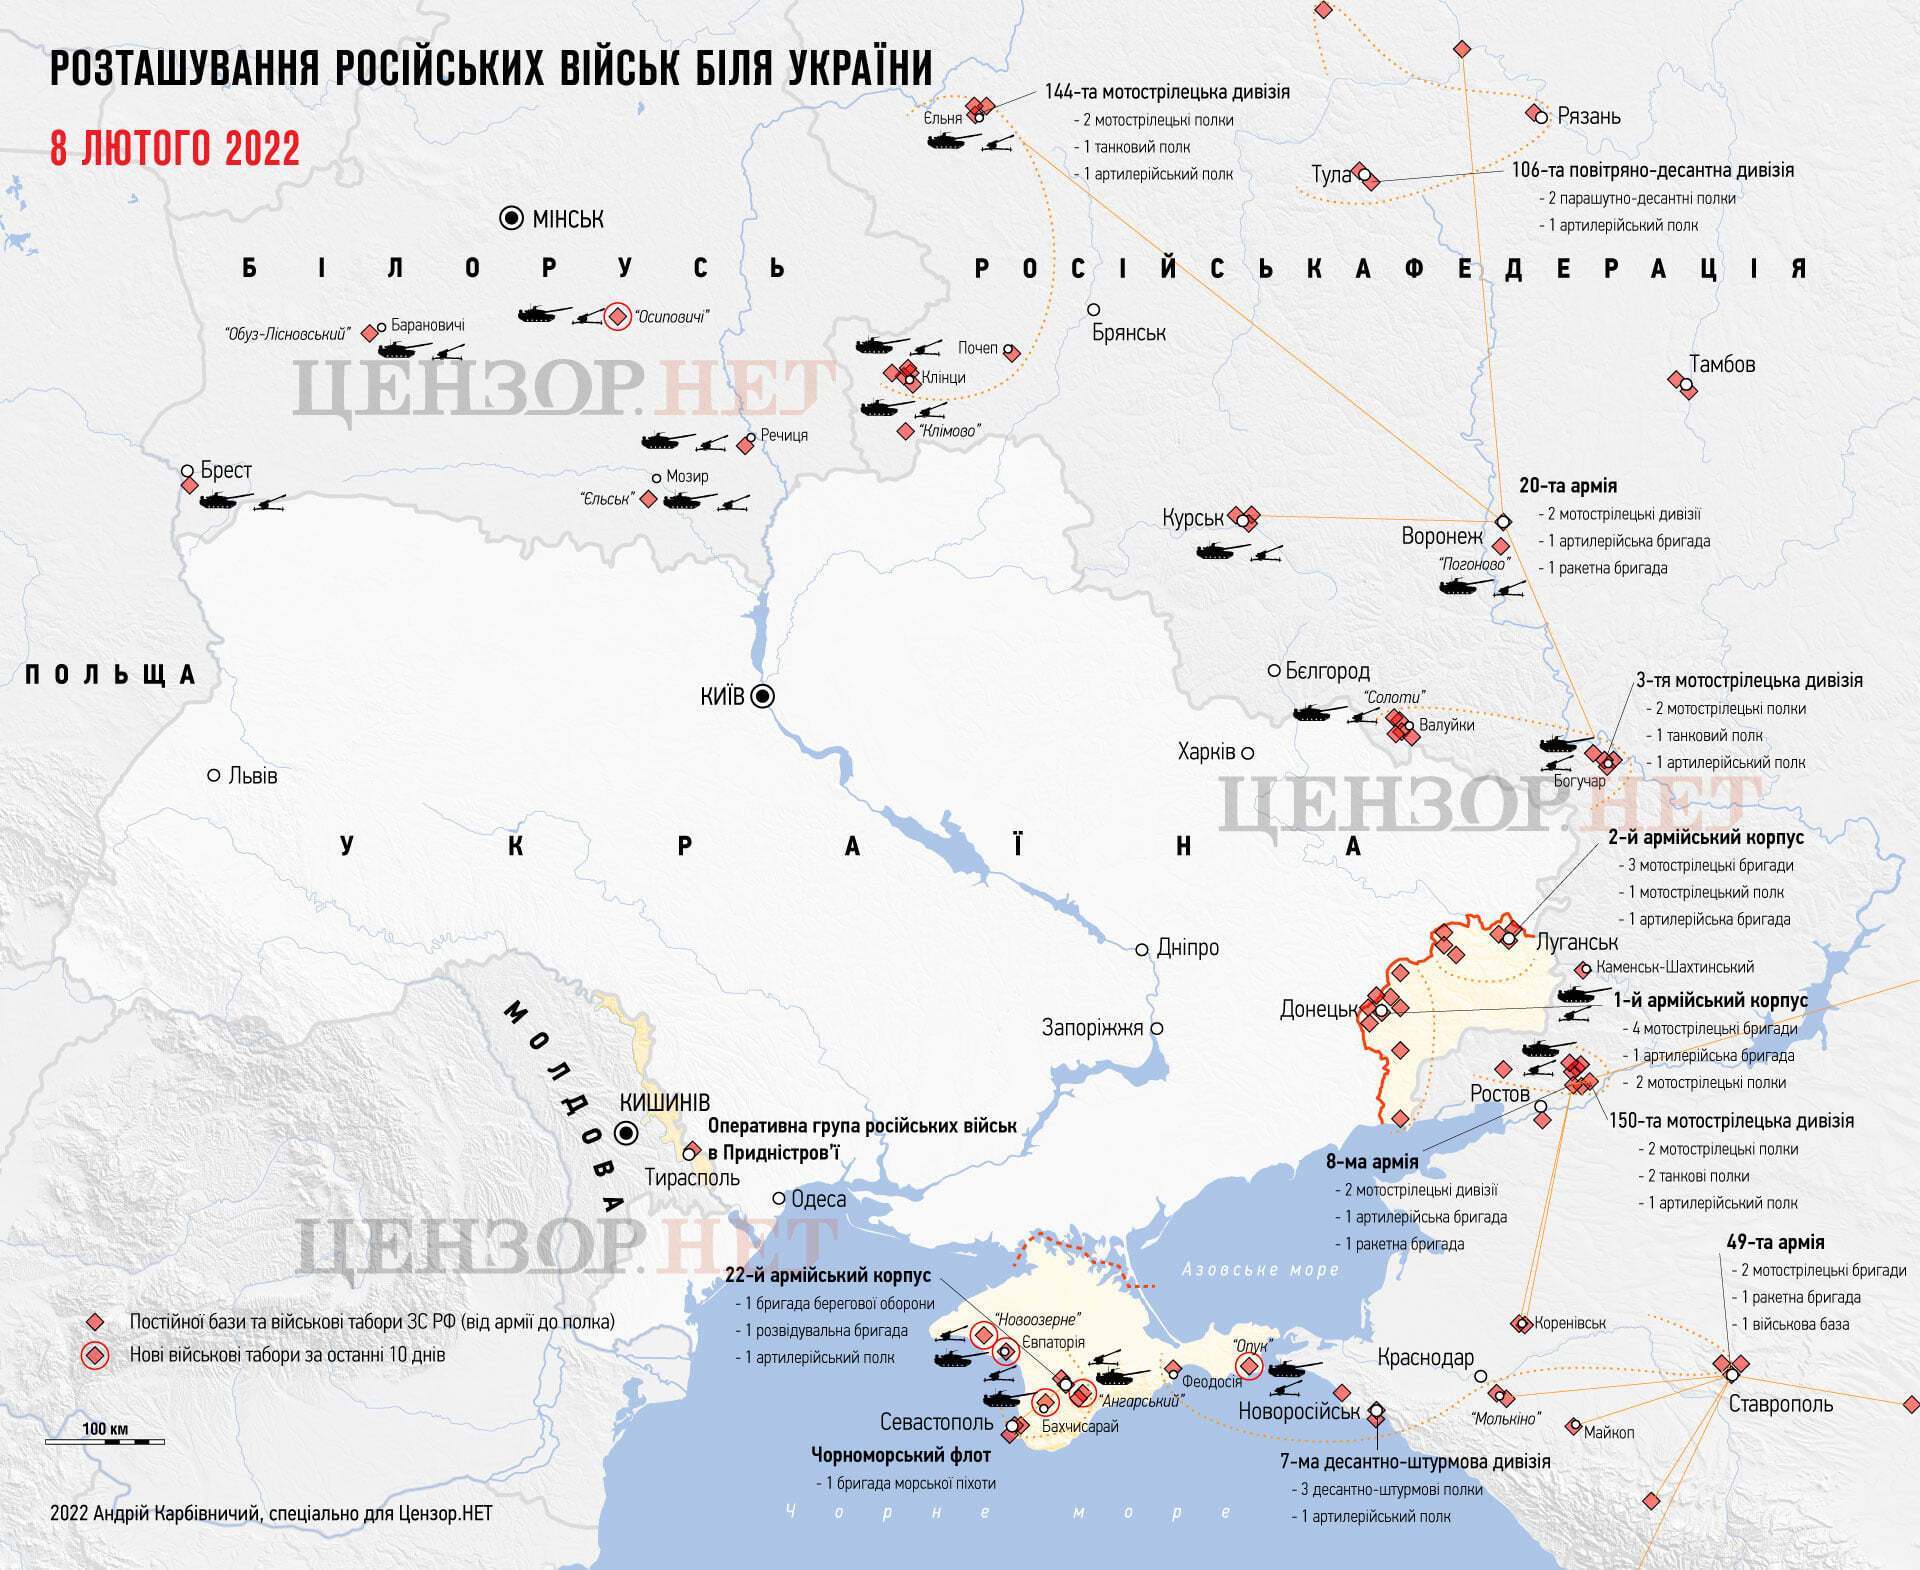 Расположение российских войск на территории Украины на 8 февраля